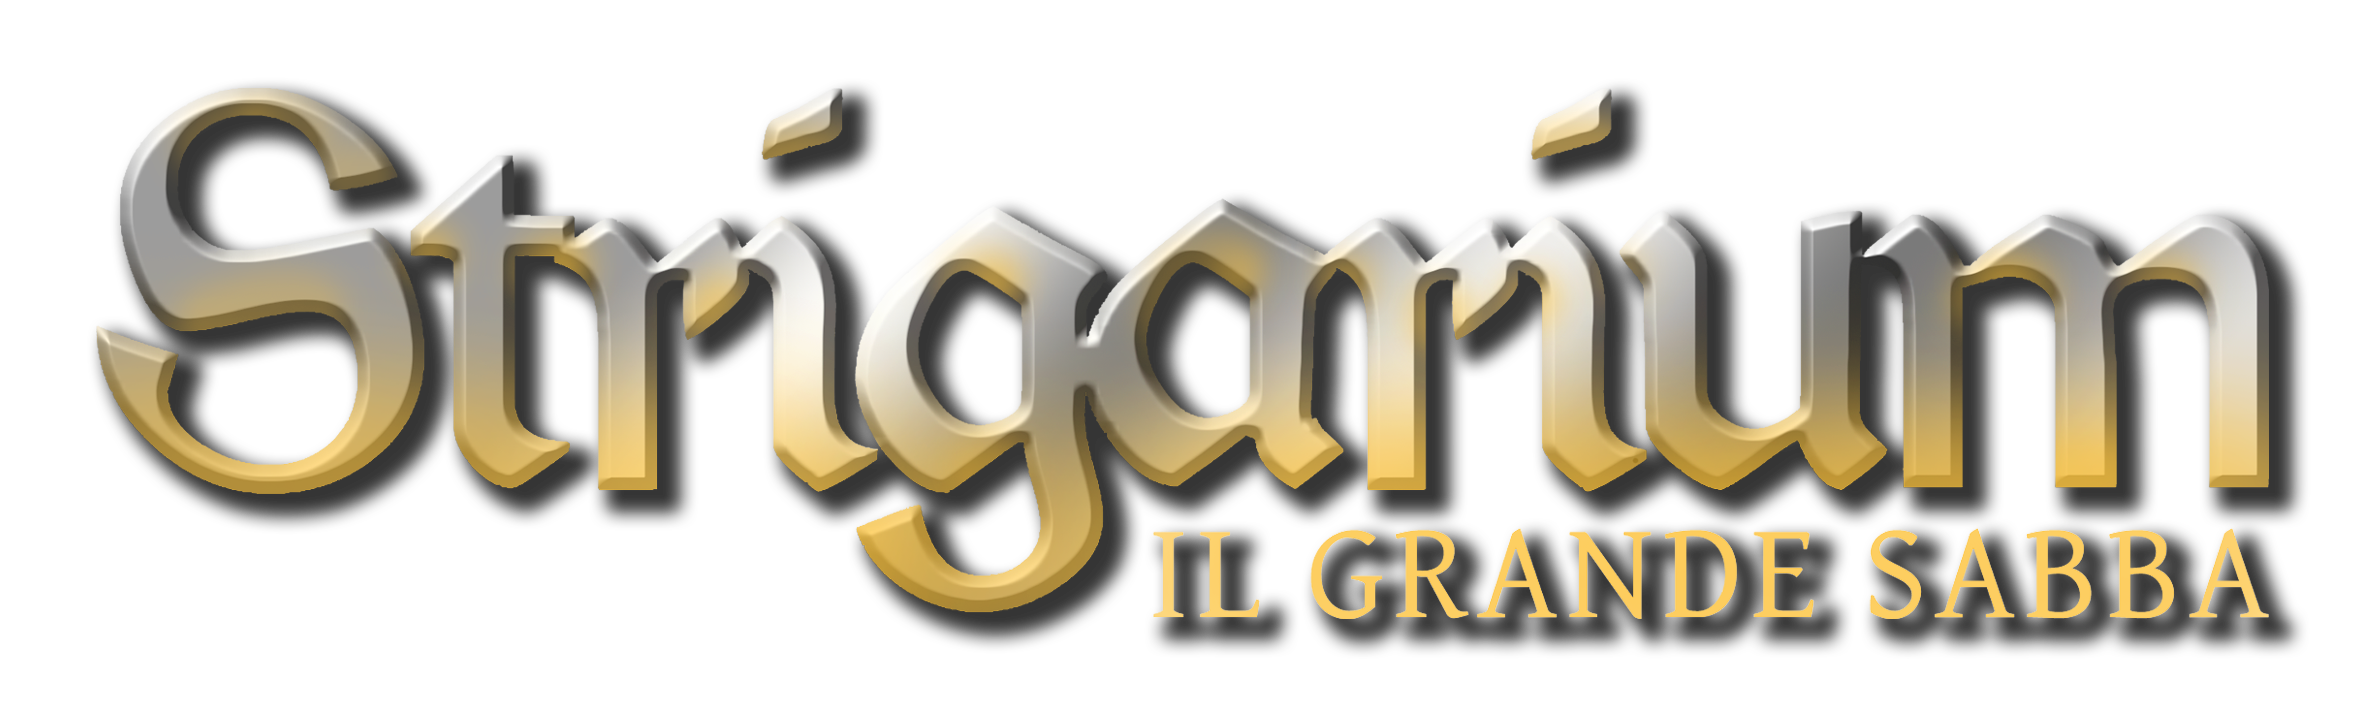 Strigarium - Il grande sabba - logo dorato